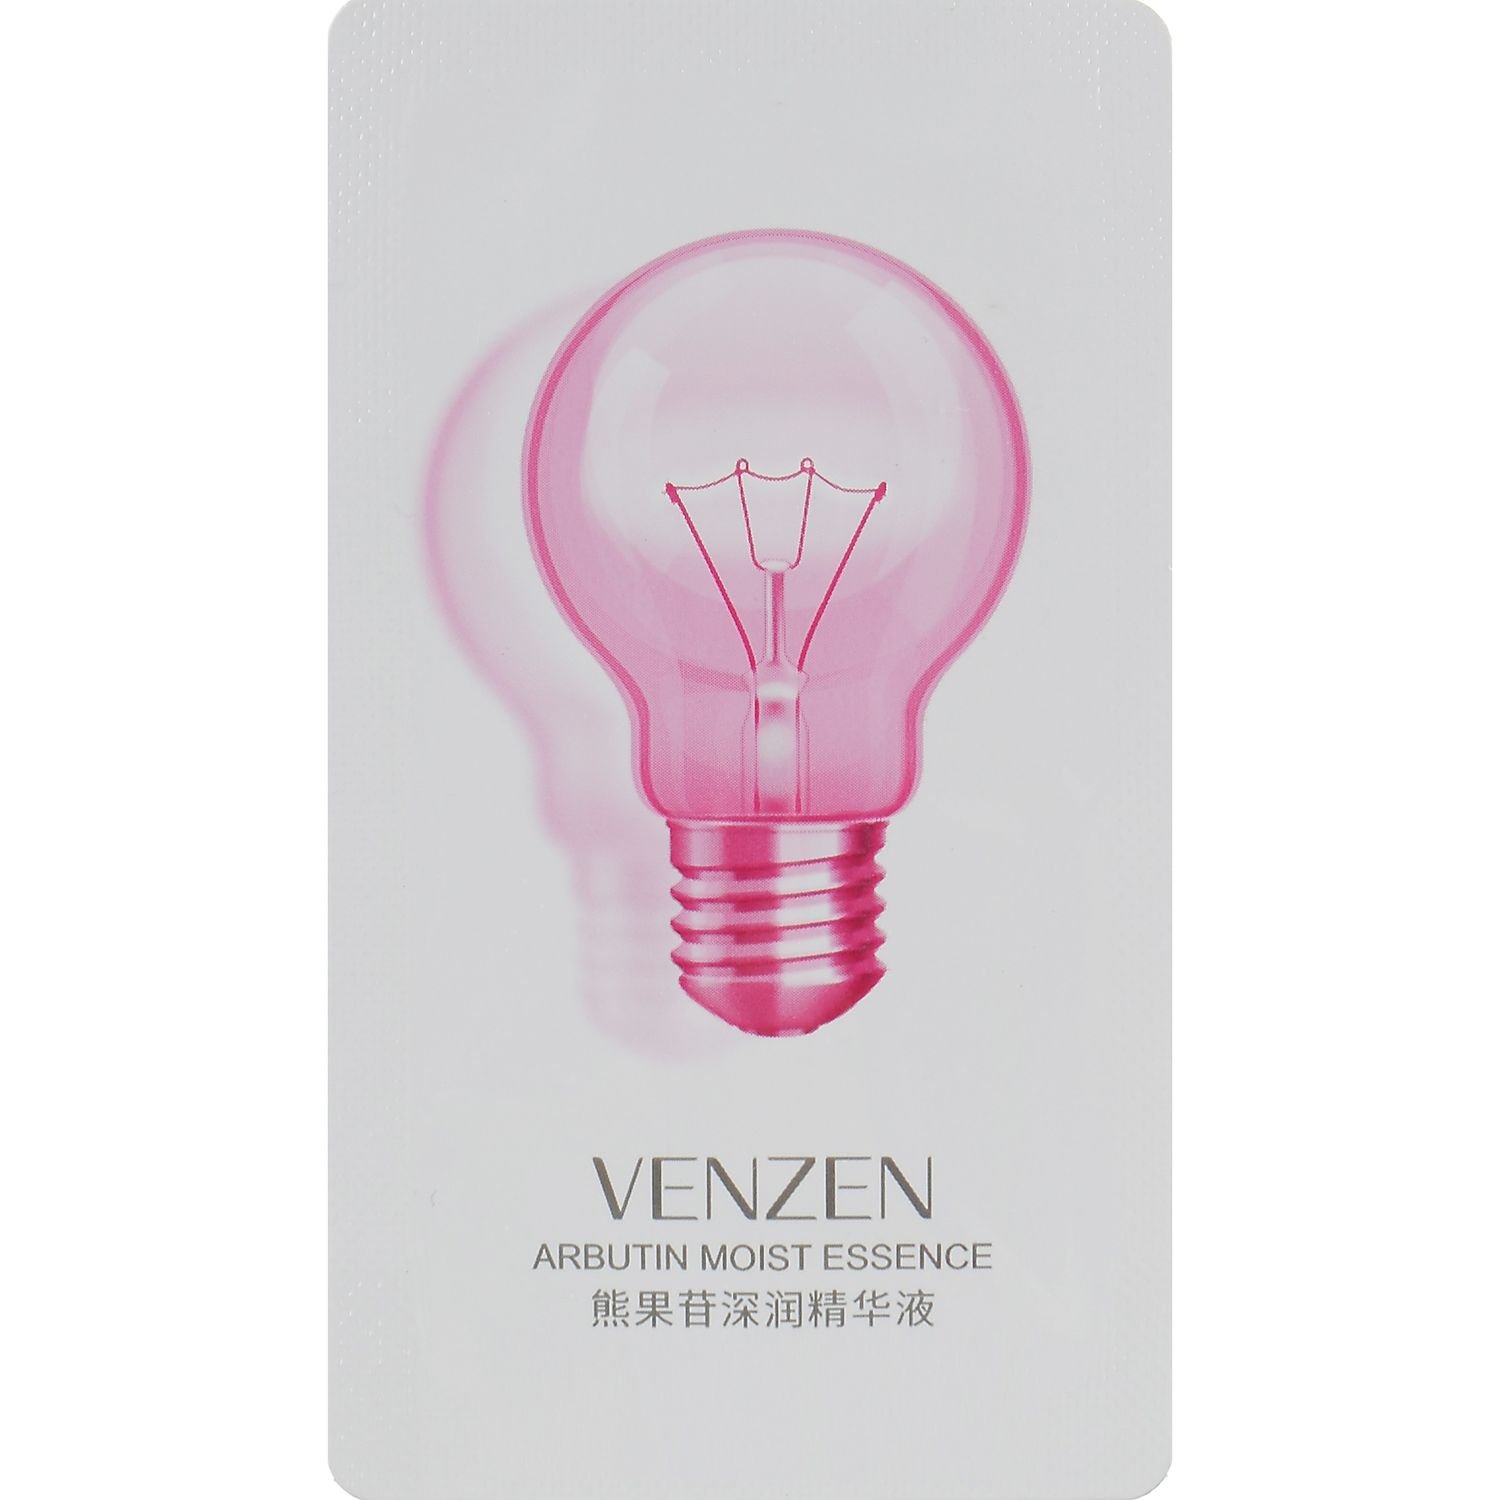 Осветляющая сыворотка для лица Venzen Arbutin Moist Essence Create Translucent Smooth Skin, с арбутином и гиалуроновой кислотой, 2 мл, 1 шт. - фото 1